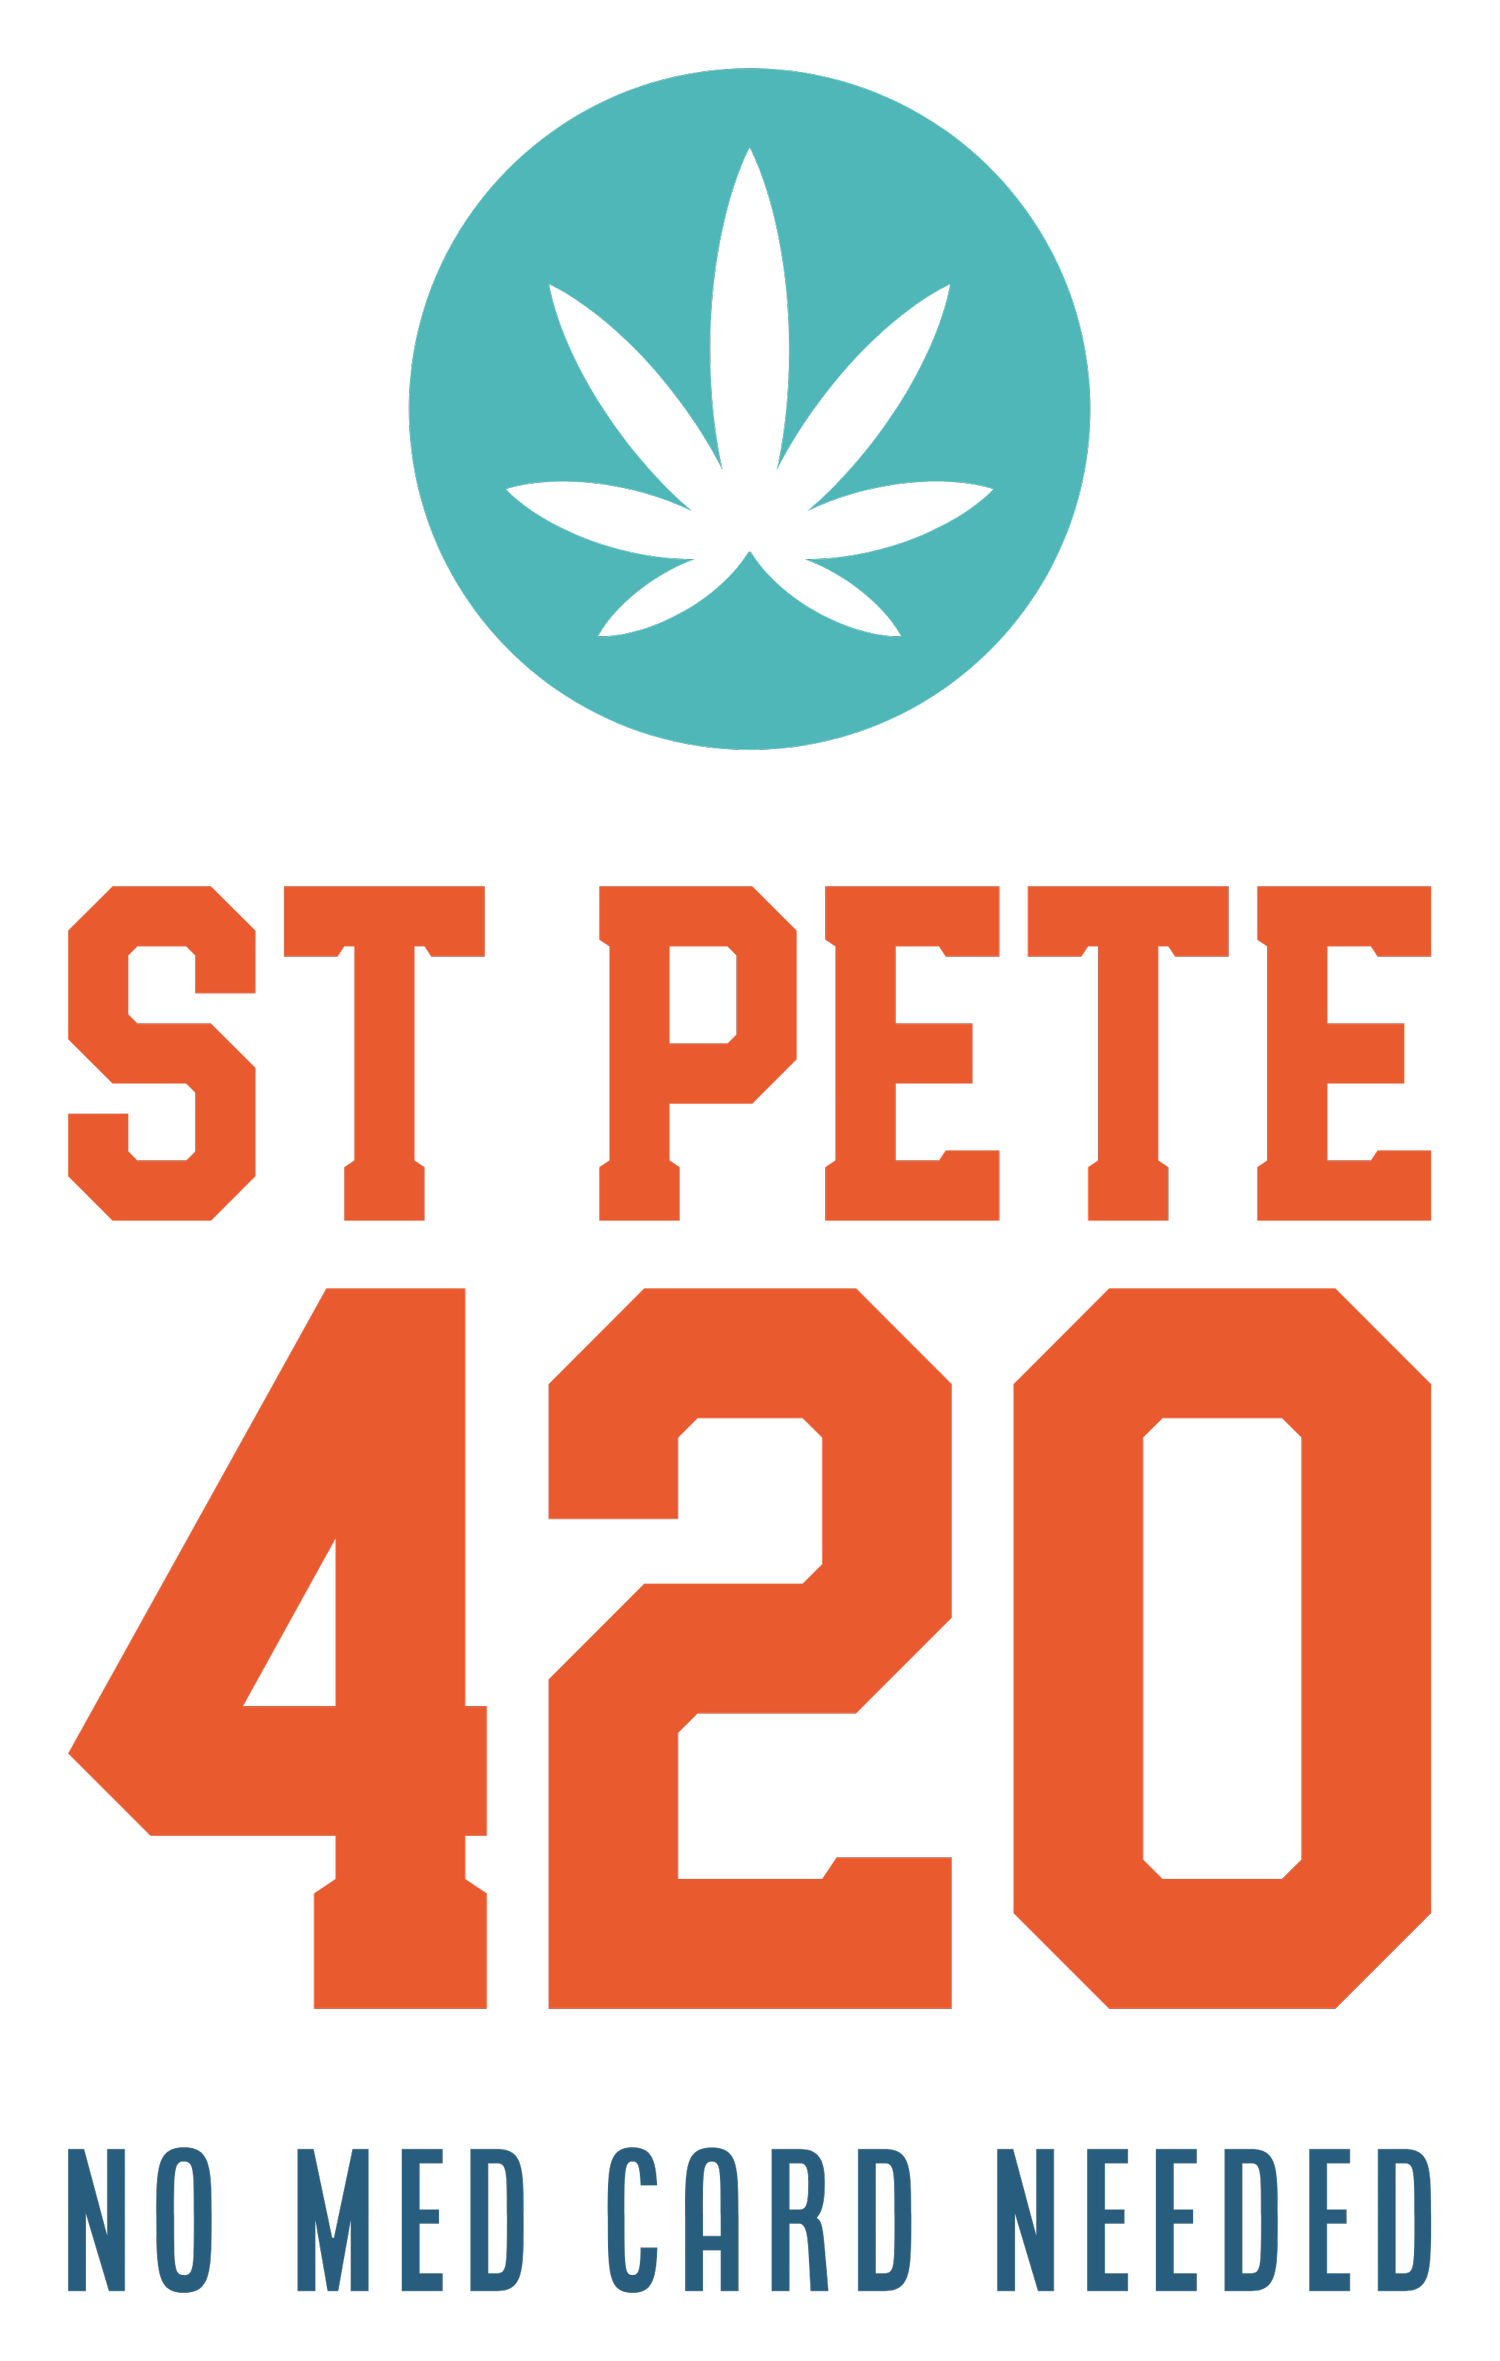 St Pete 420 Dispensary